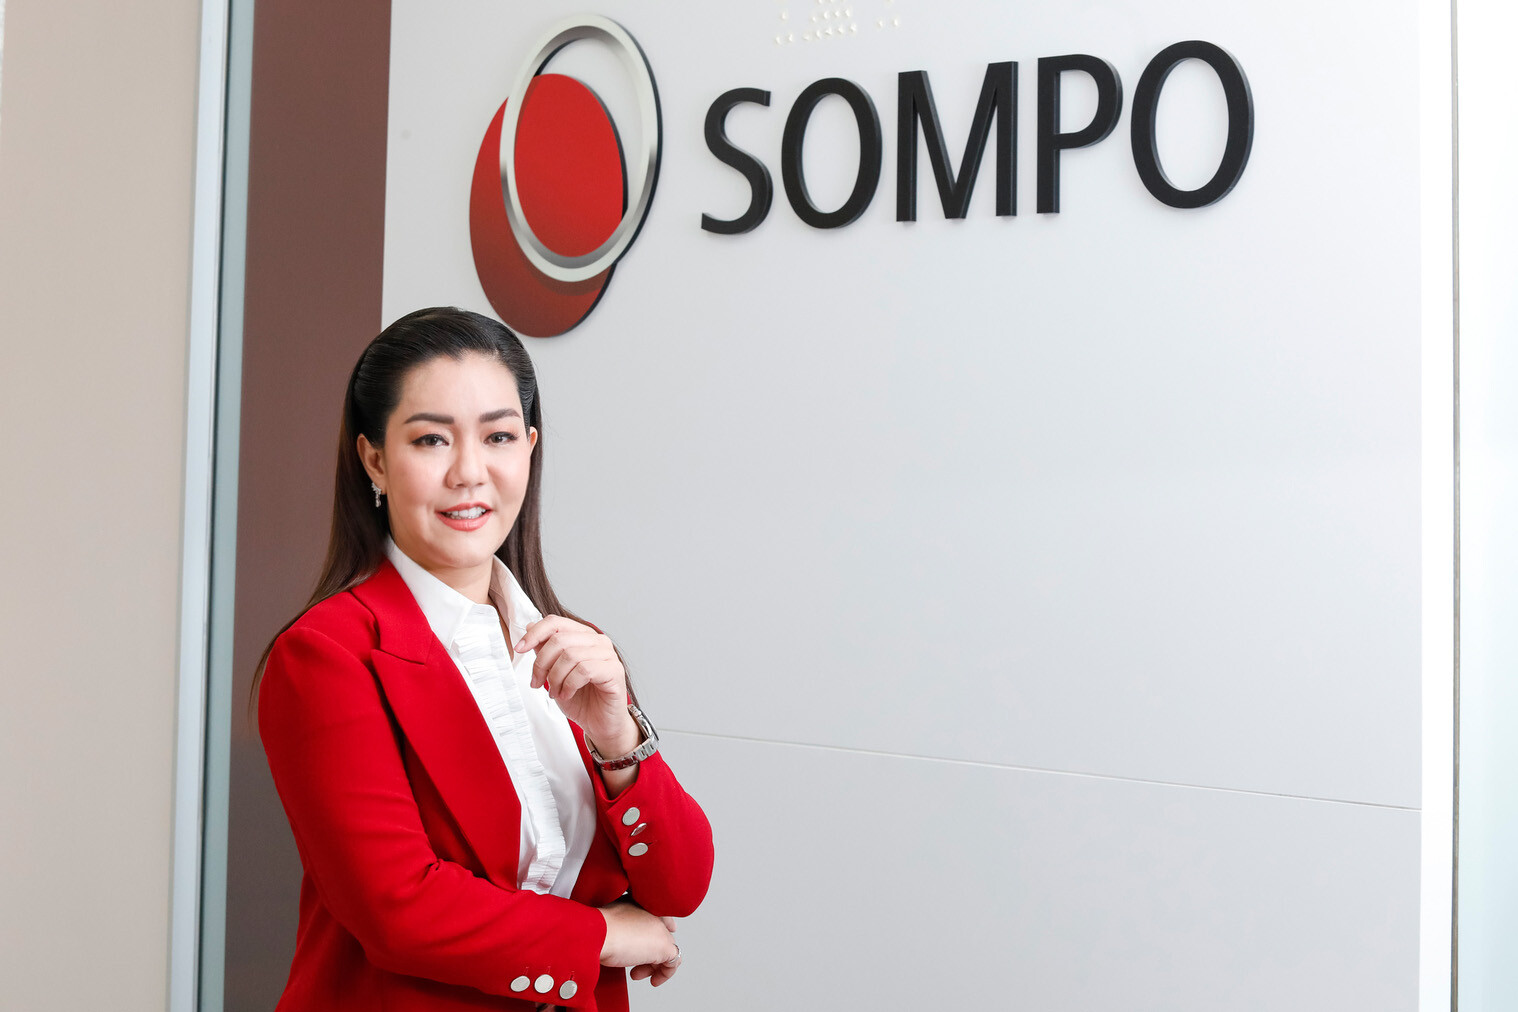 ซมโปะ ประกันภัย เปิดตัว "Sompo My Policy" เติมเต็มความสะดวกให้ลูกค้า ยกระดับบริการตรวจสอบข้อมูลกรมธรรม์ผ่าน LINE OA ตอกย้ำจุดยืน "Digital Insure"